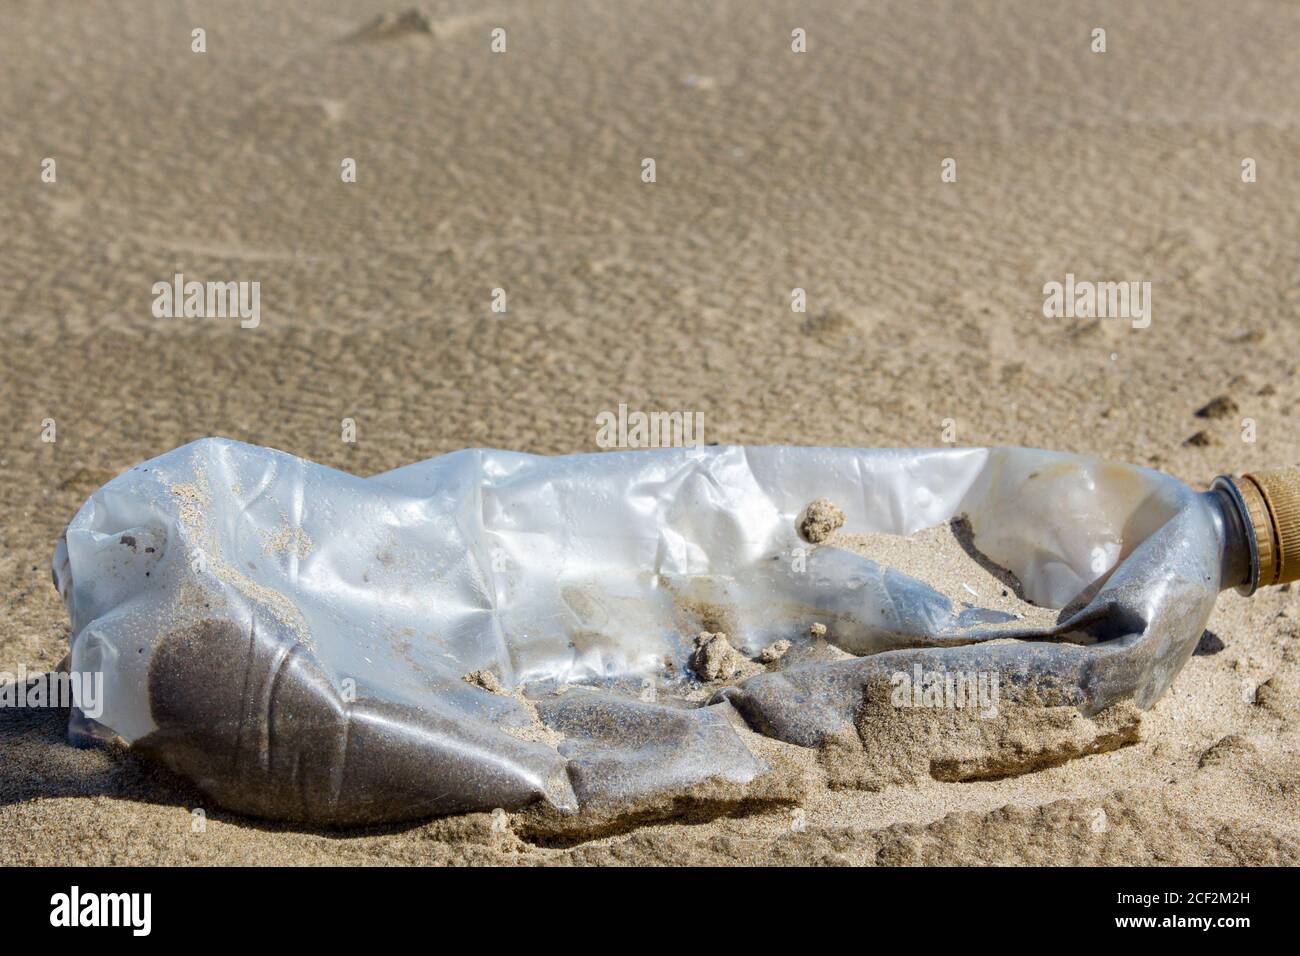 Déchets plastiques laissés sur les plages Banque D'Images